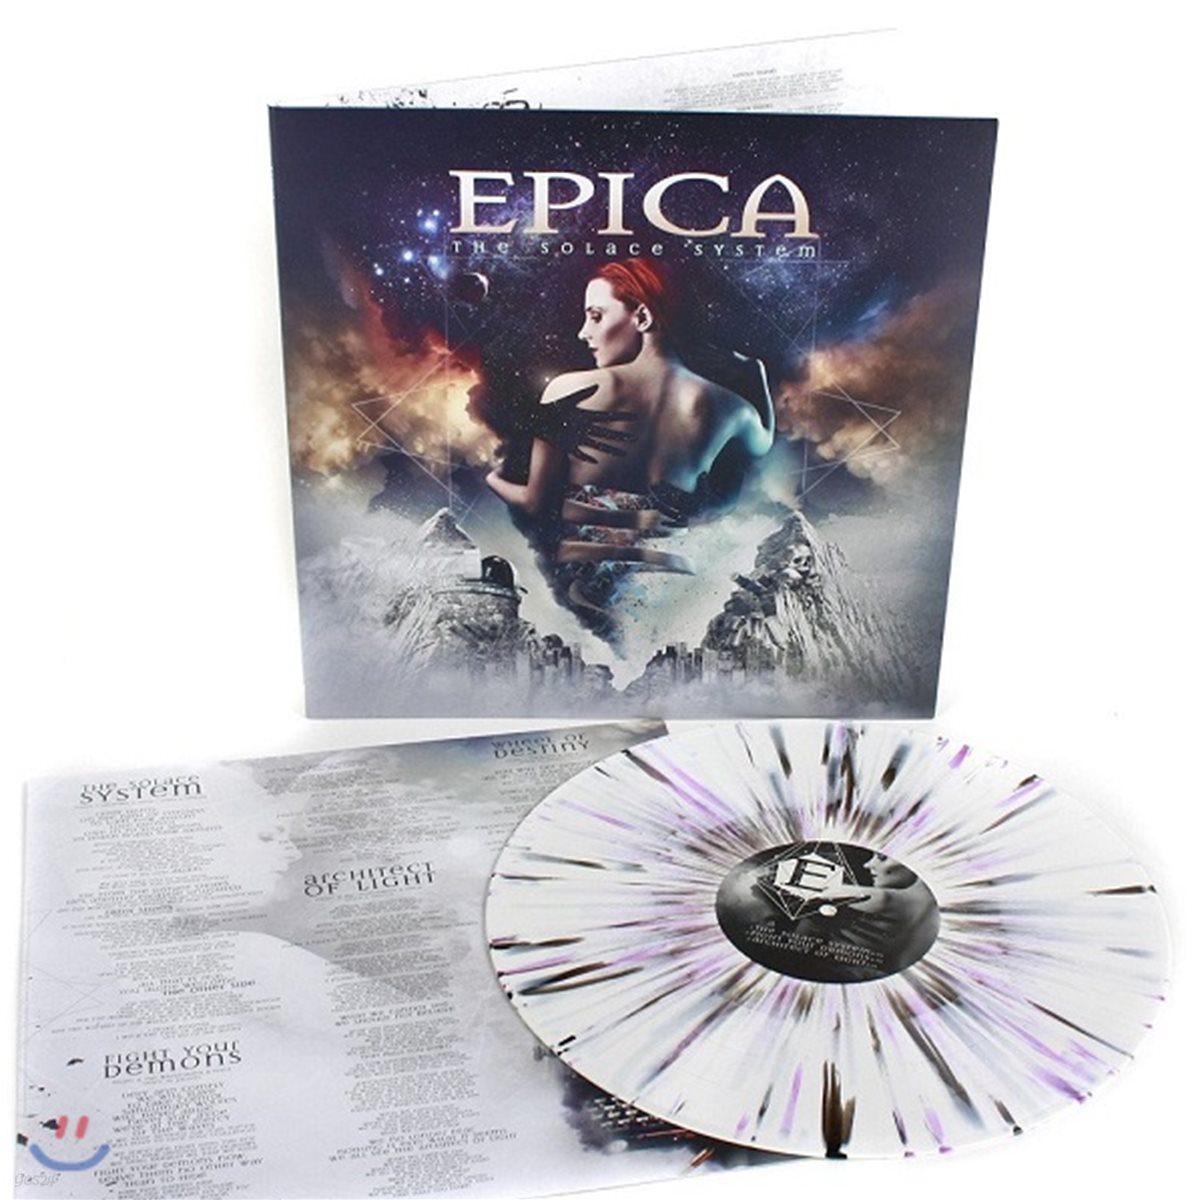 Epica (에피카) - The Solace System [그레이 화이트 & 블랙 스플래터 컬러 LP]